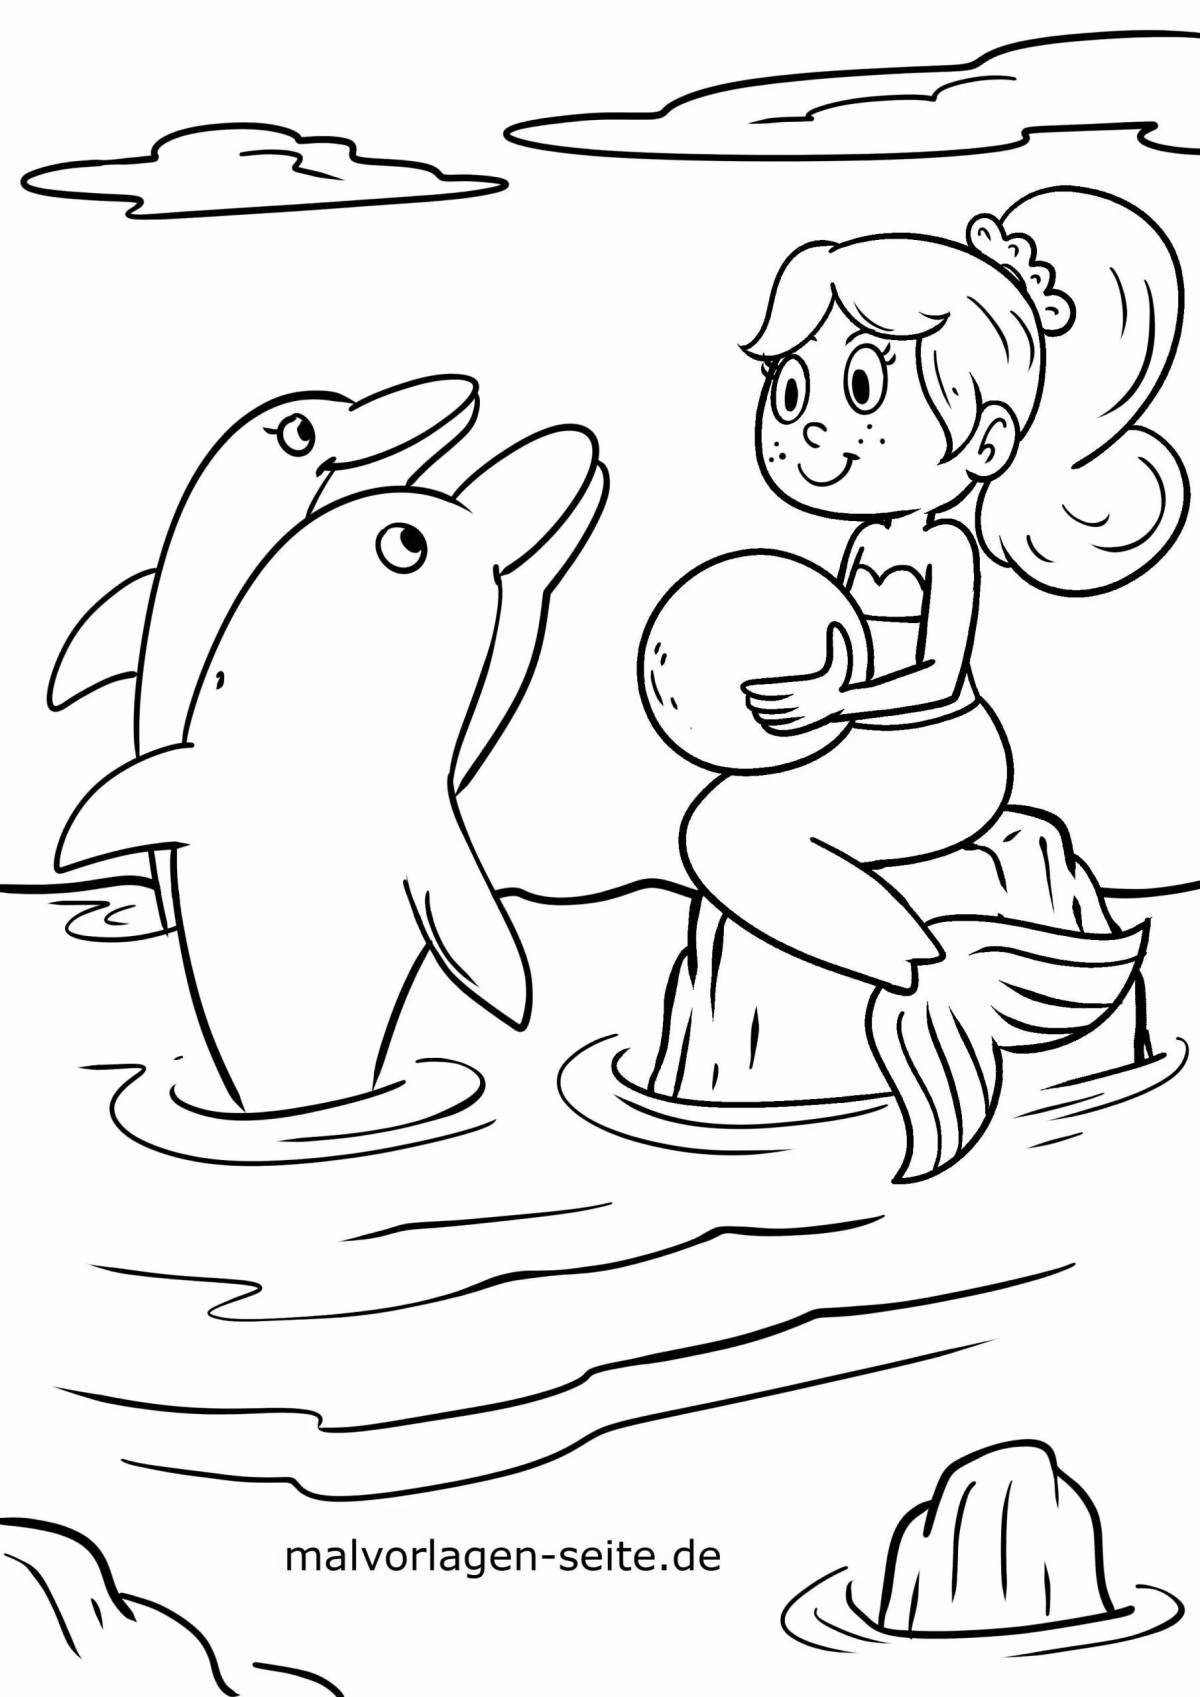 Элегантная раскраска русалка и дельфин